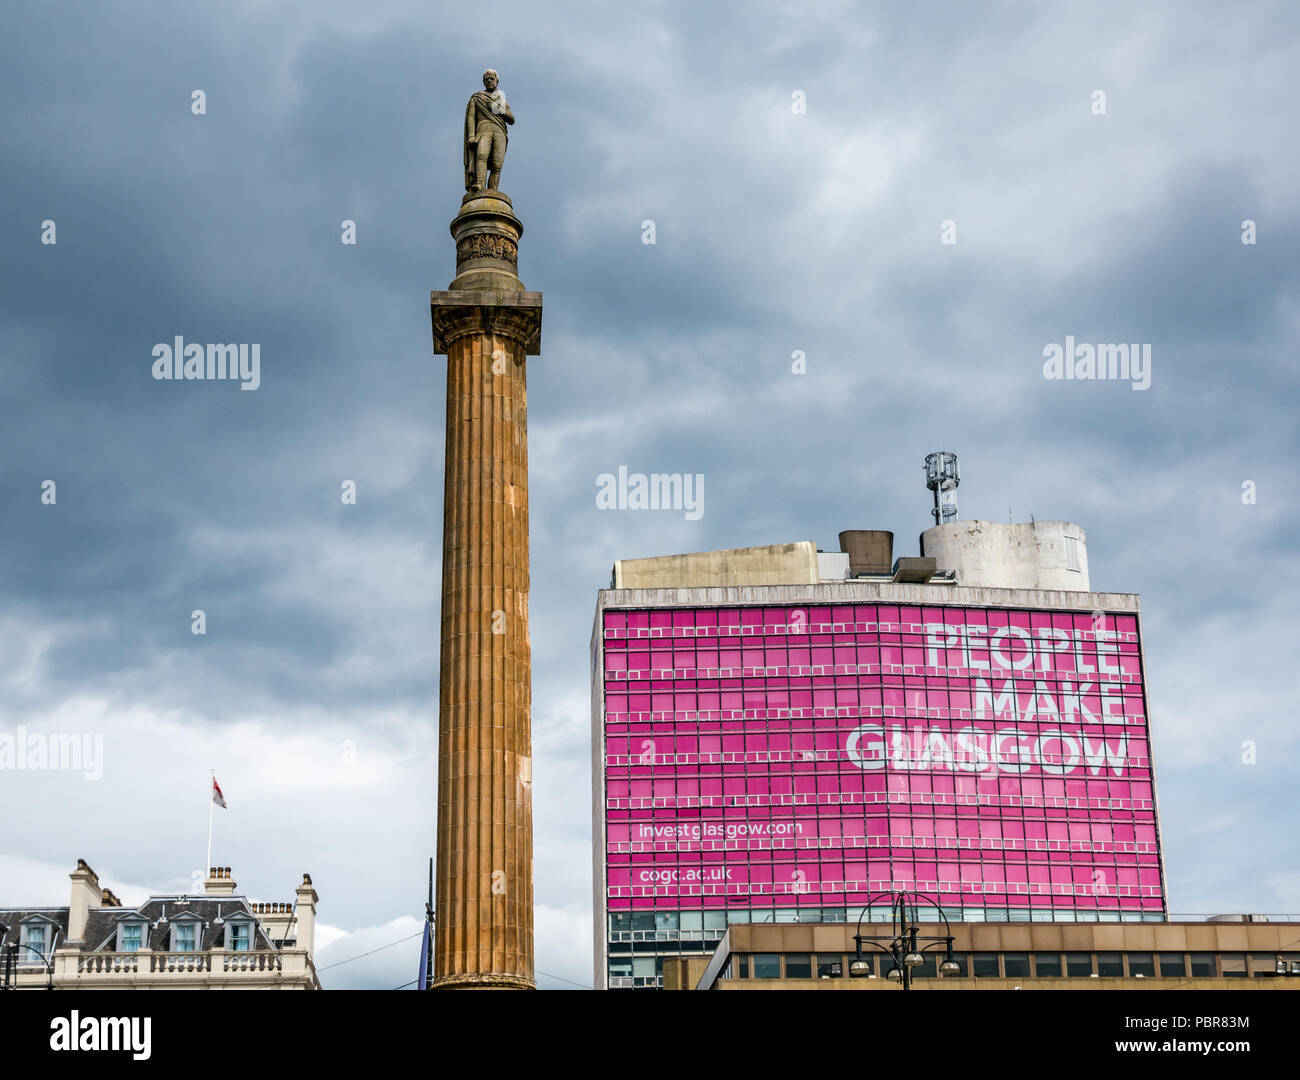 Sir Walter Scott Colonna commemorativa statua e rosa le persone fanno Glasgow annuncio pubblicitario con cielo tempestoso, George Square, Glasgow, Scotland, Regno Unito Foto Stock